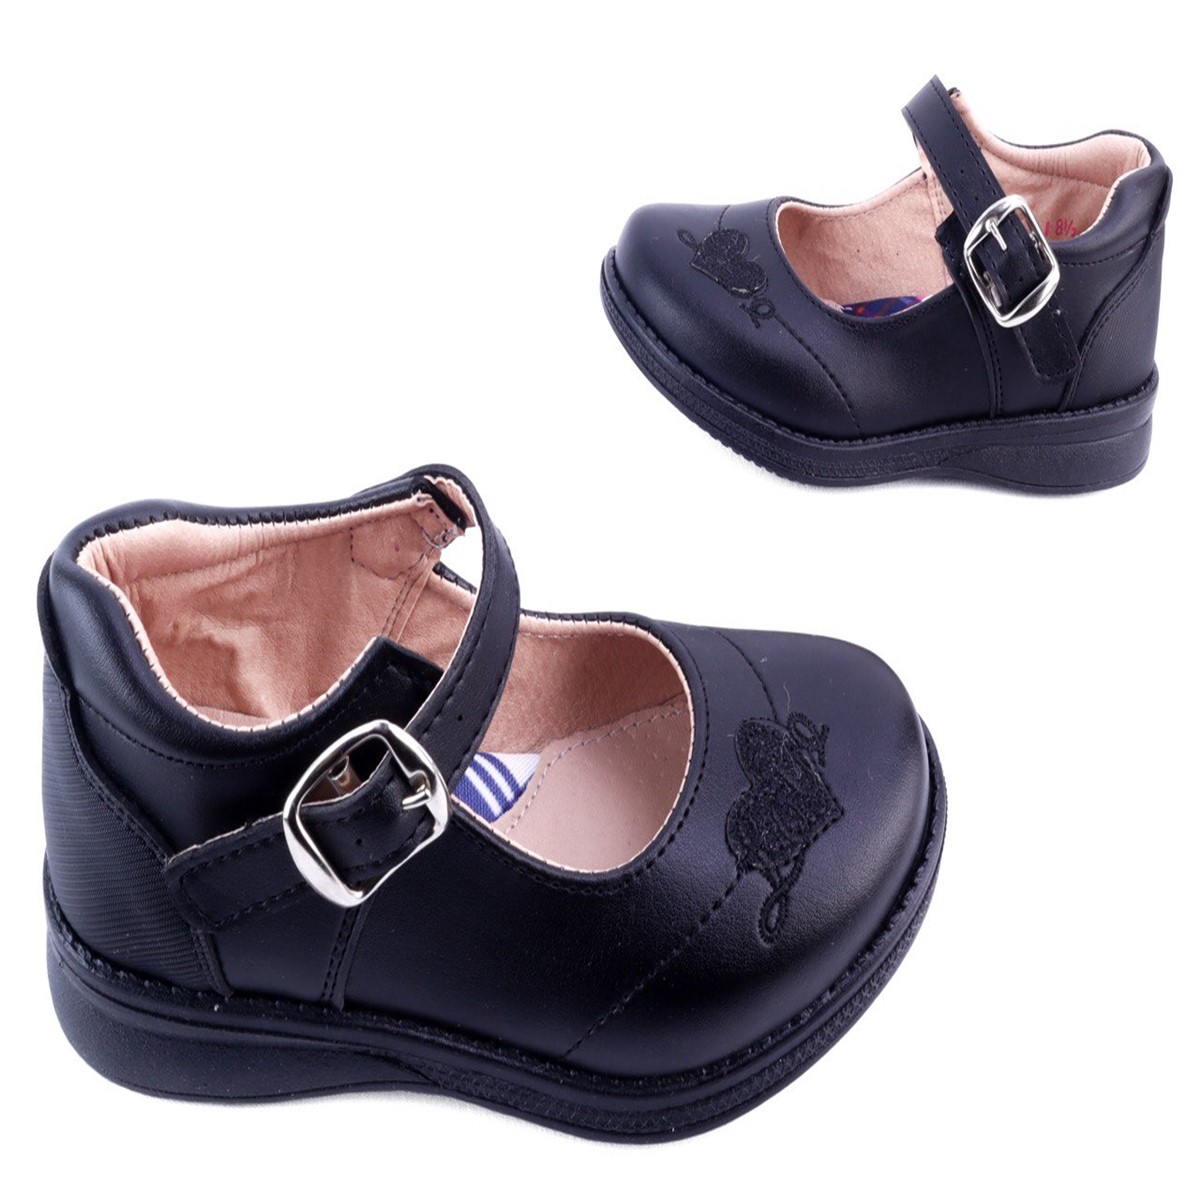 Zapato Escolar Negro Niña Arco Soporte Flats Casual 13-461-n